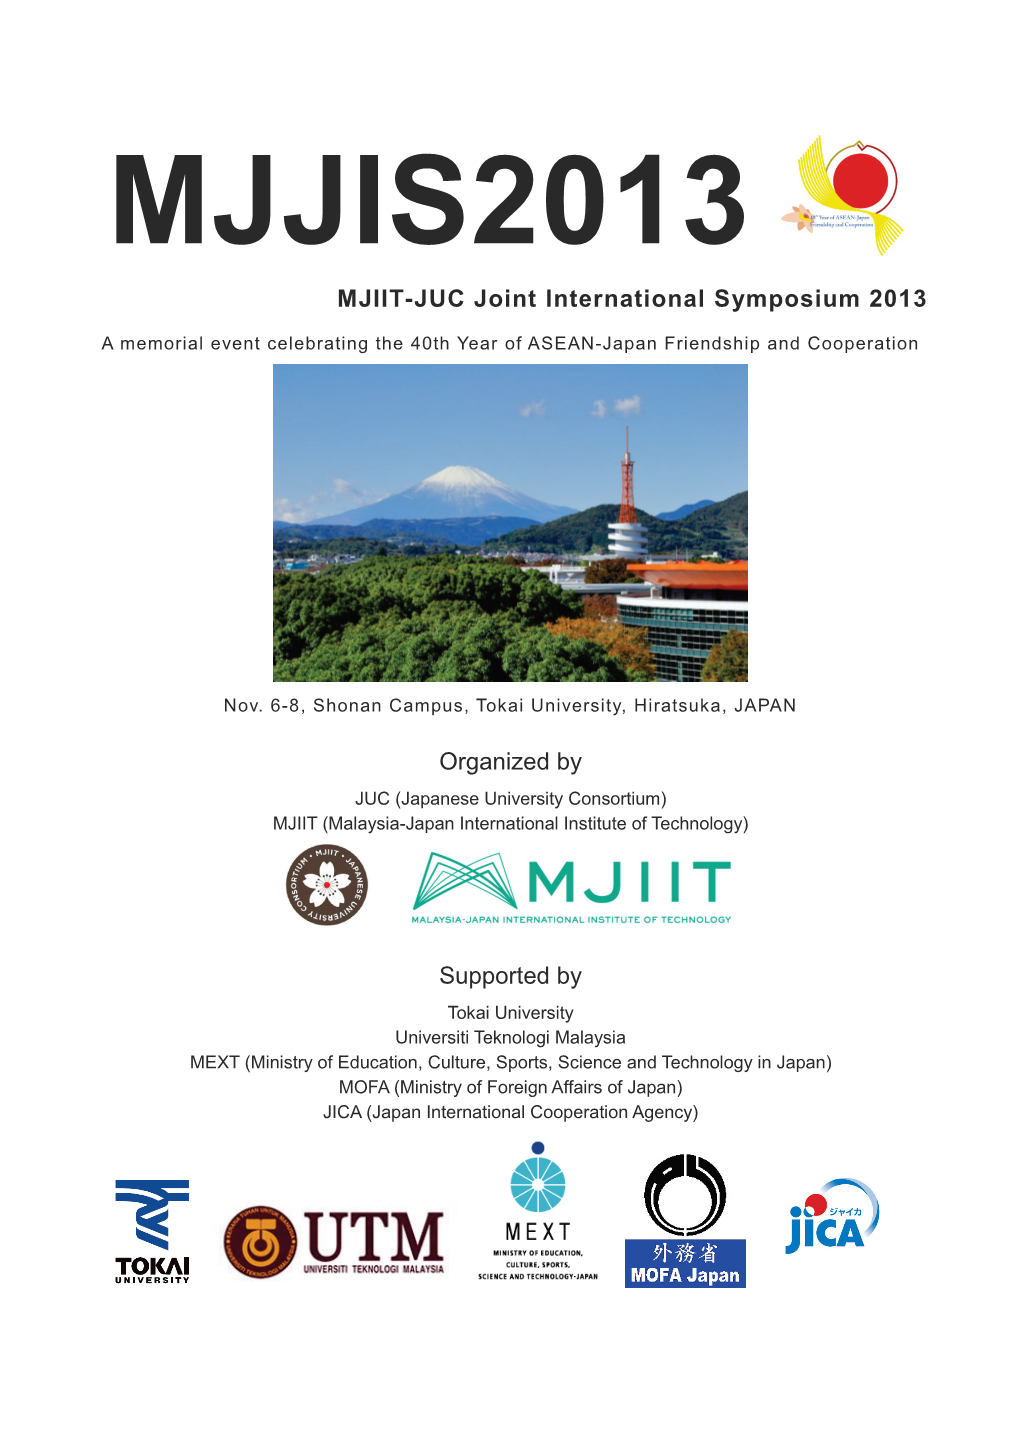 MJIIT-JUC Joint International Symposium 2013 Organized By